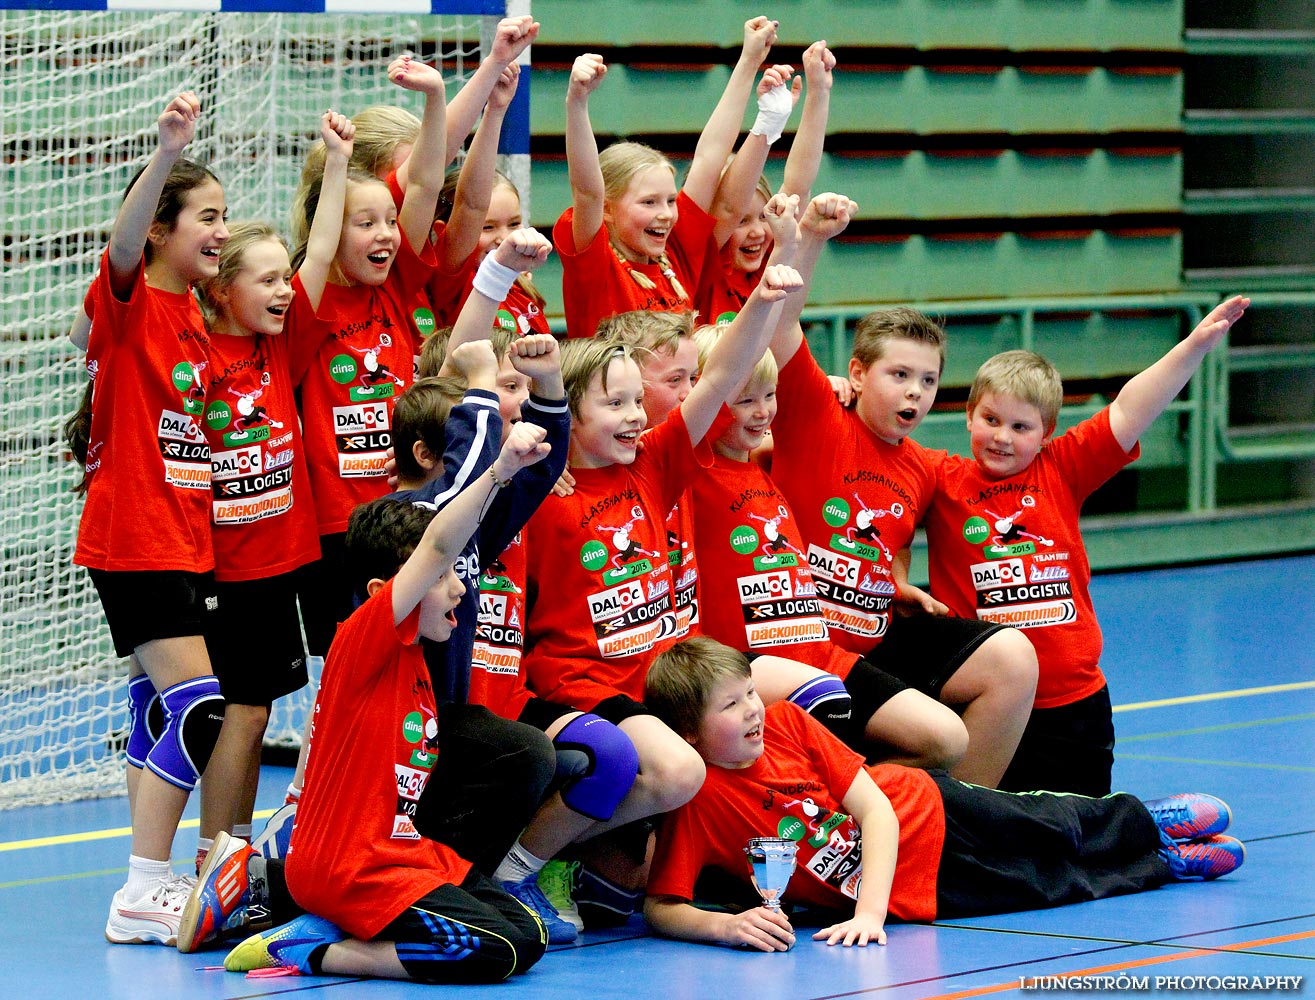 Klasshandboll Skövde 2013 Åldersklass 2002,mix,Arena Skövde,Skövde,Sverige,Handboll,,2013,63193